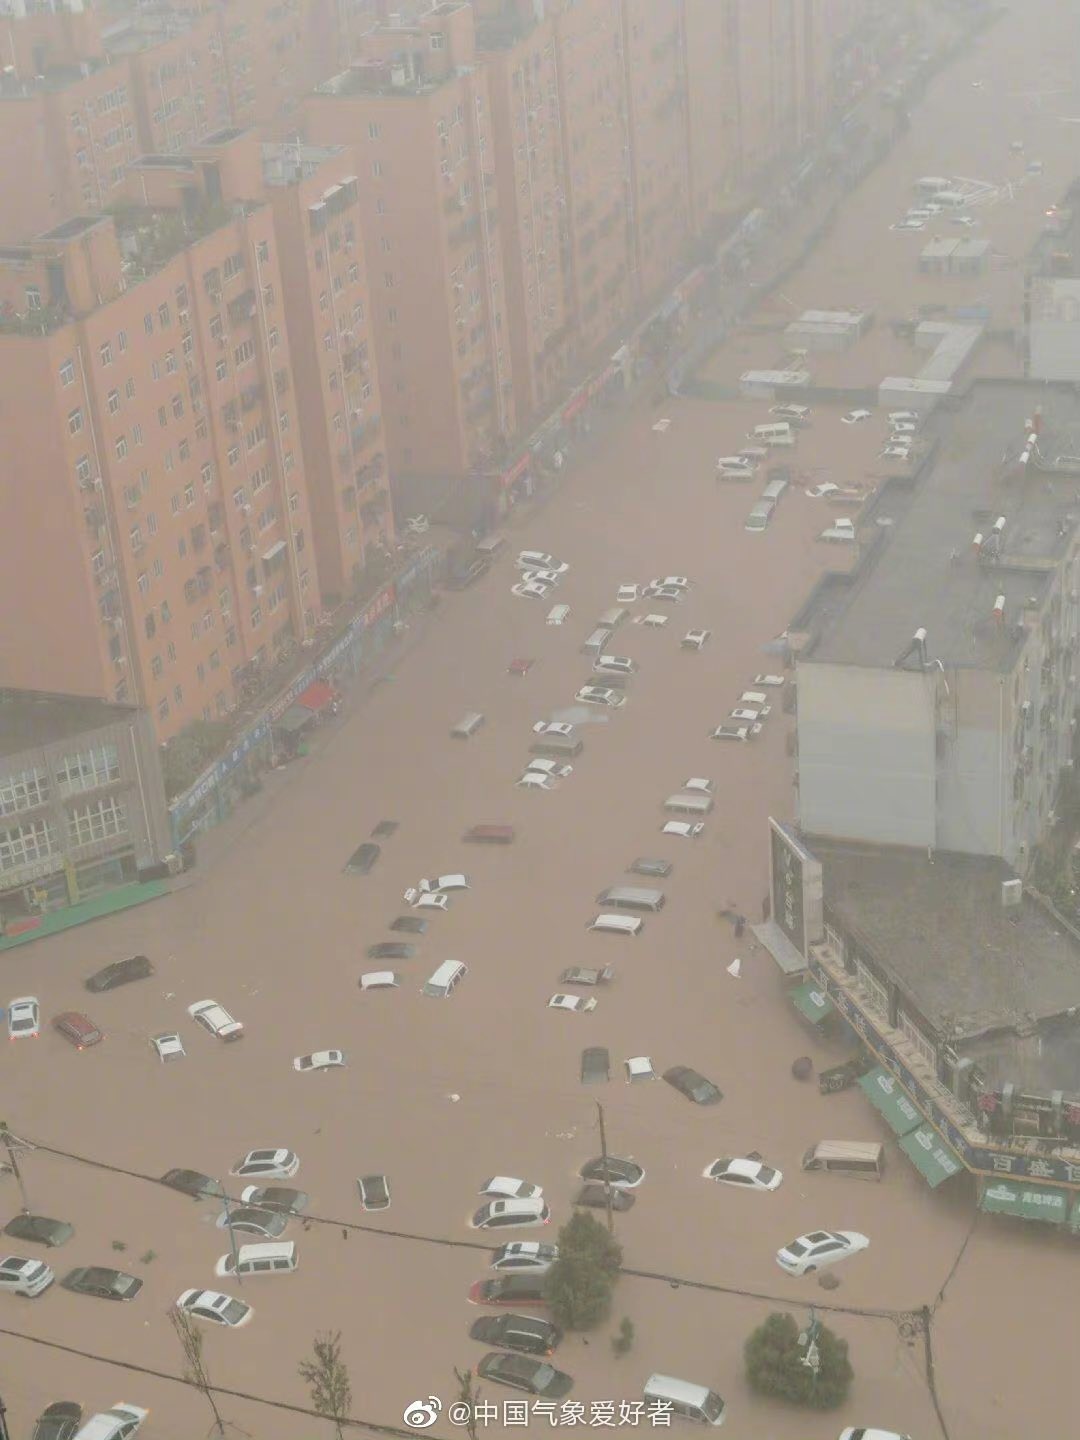 Banjir di Cina: 12 Orang Tewas, Ratusan Ribu Warga Dievakuasi